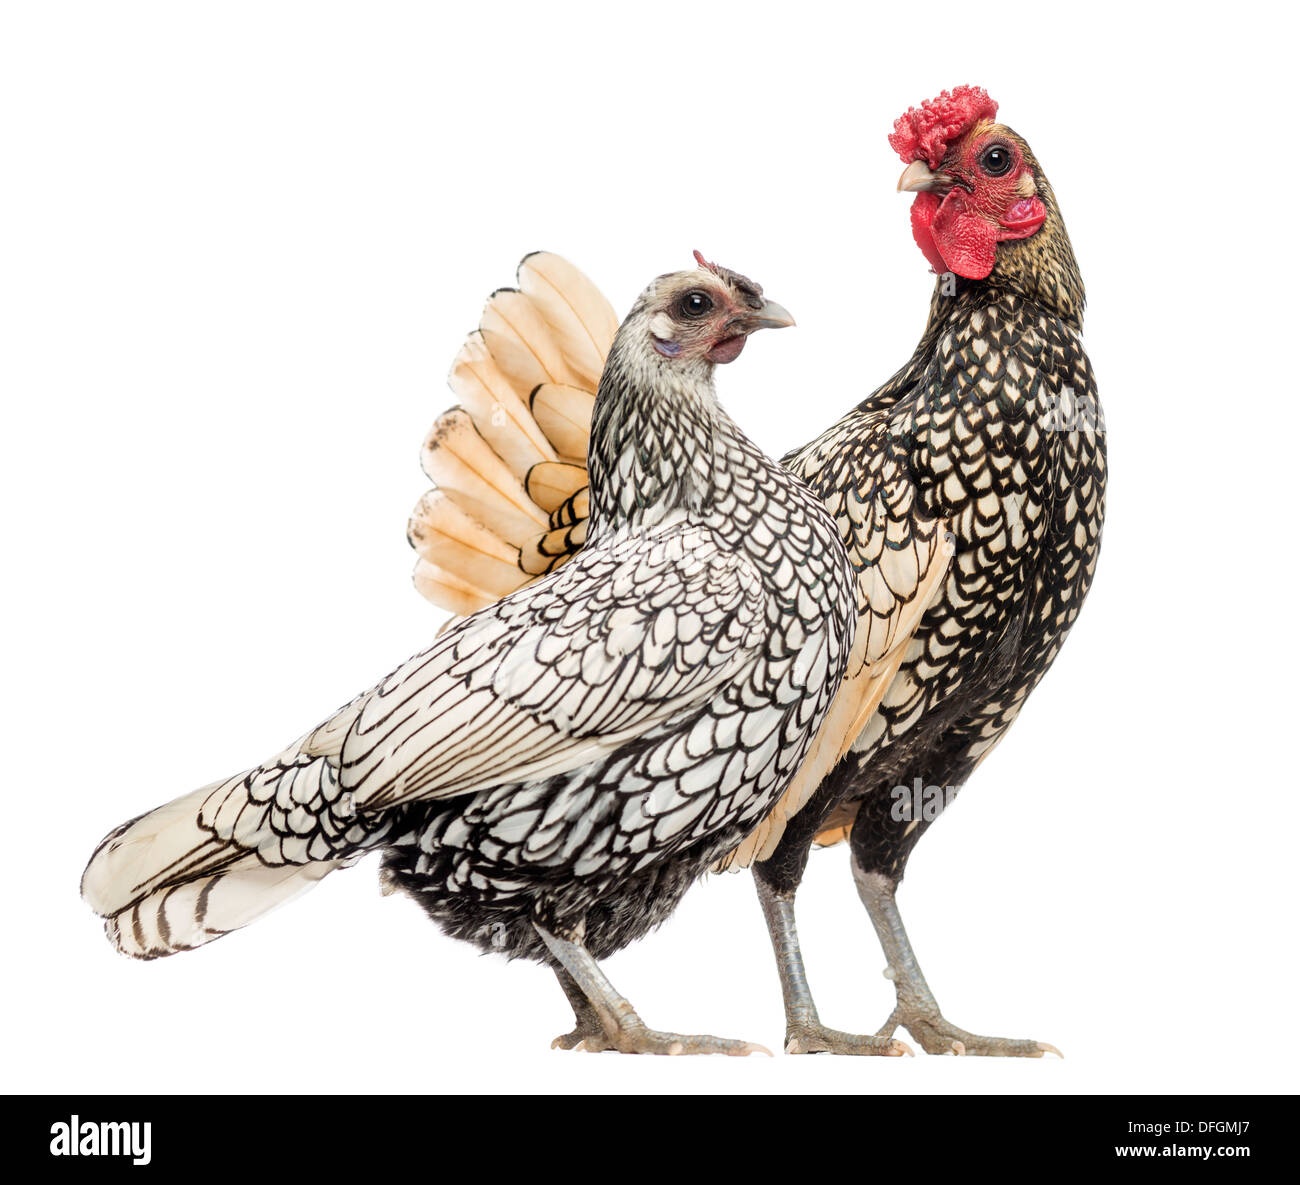 Golden Sebright Bantam rooster et argent Sebright bantam hen in front of white background Banque D'Images